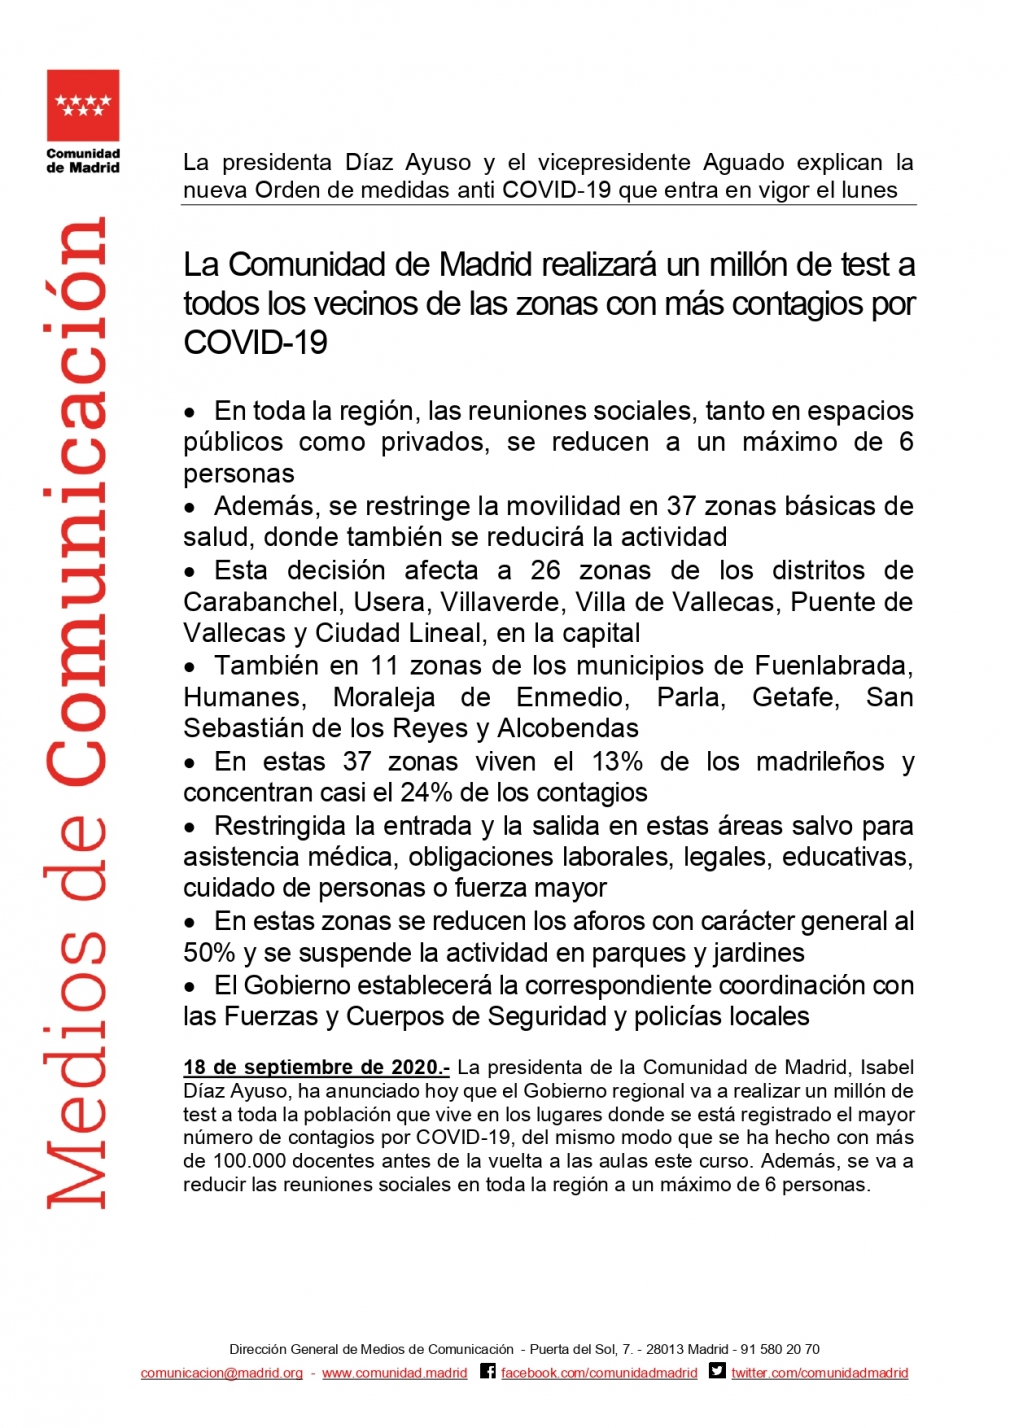 NUEVA ORDEN DE MEDIDAS ANTI COVID-19 EN LA COMUNIDAD DE MADRID